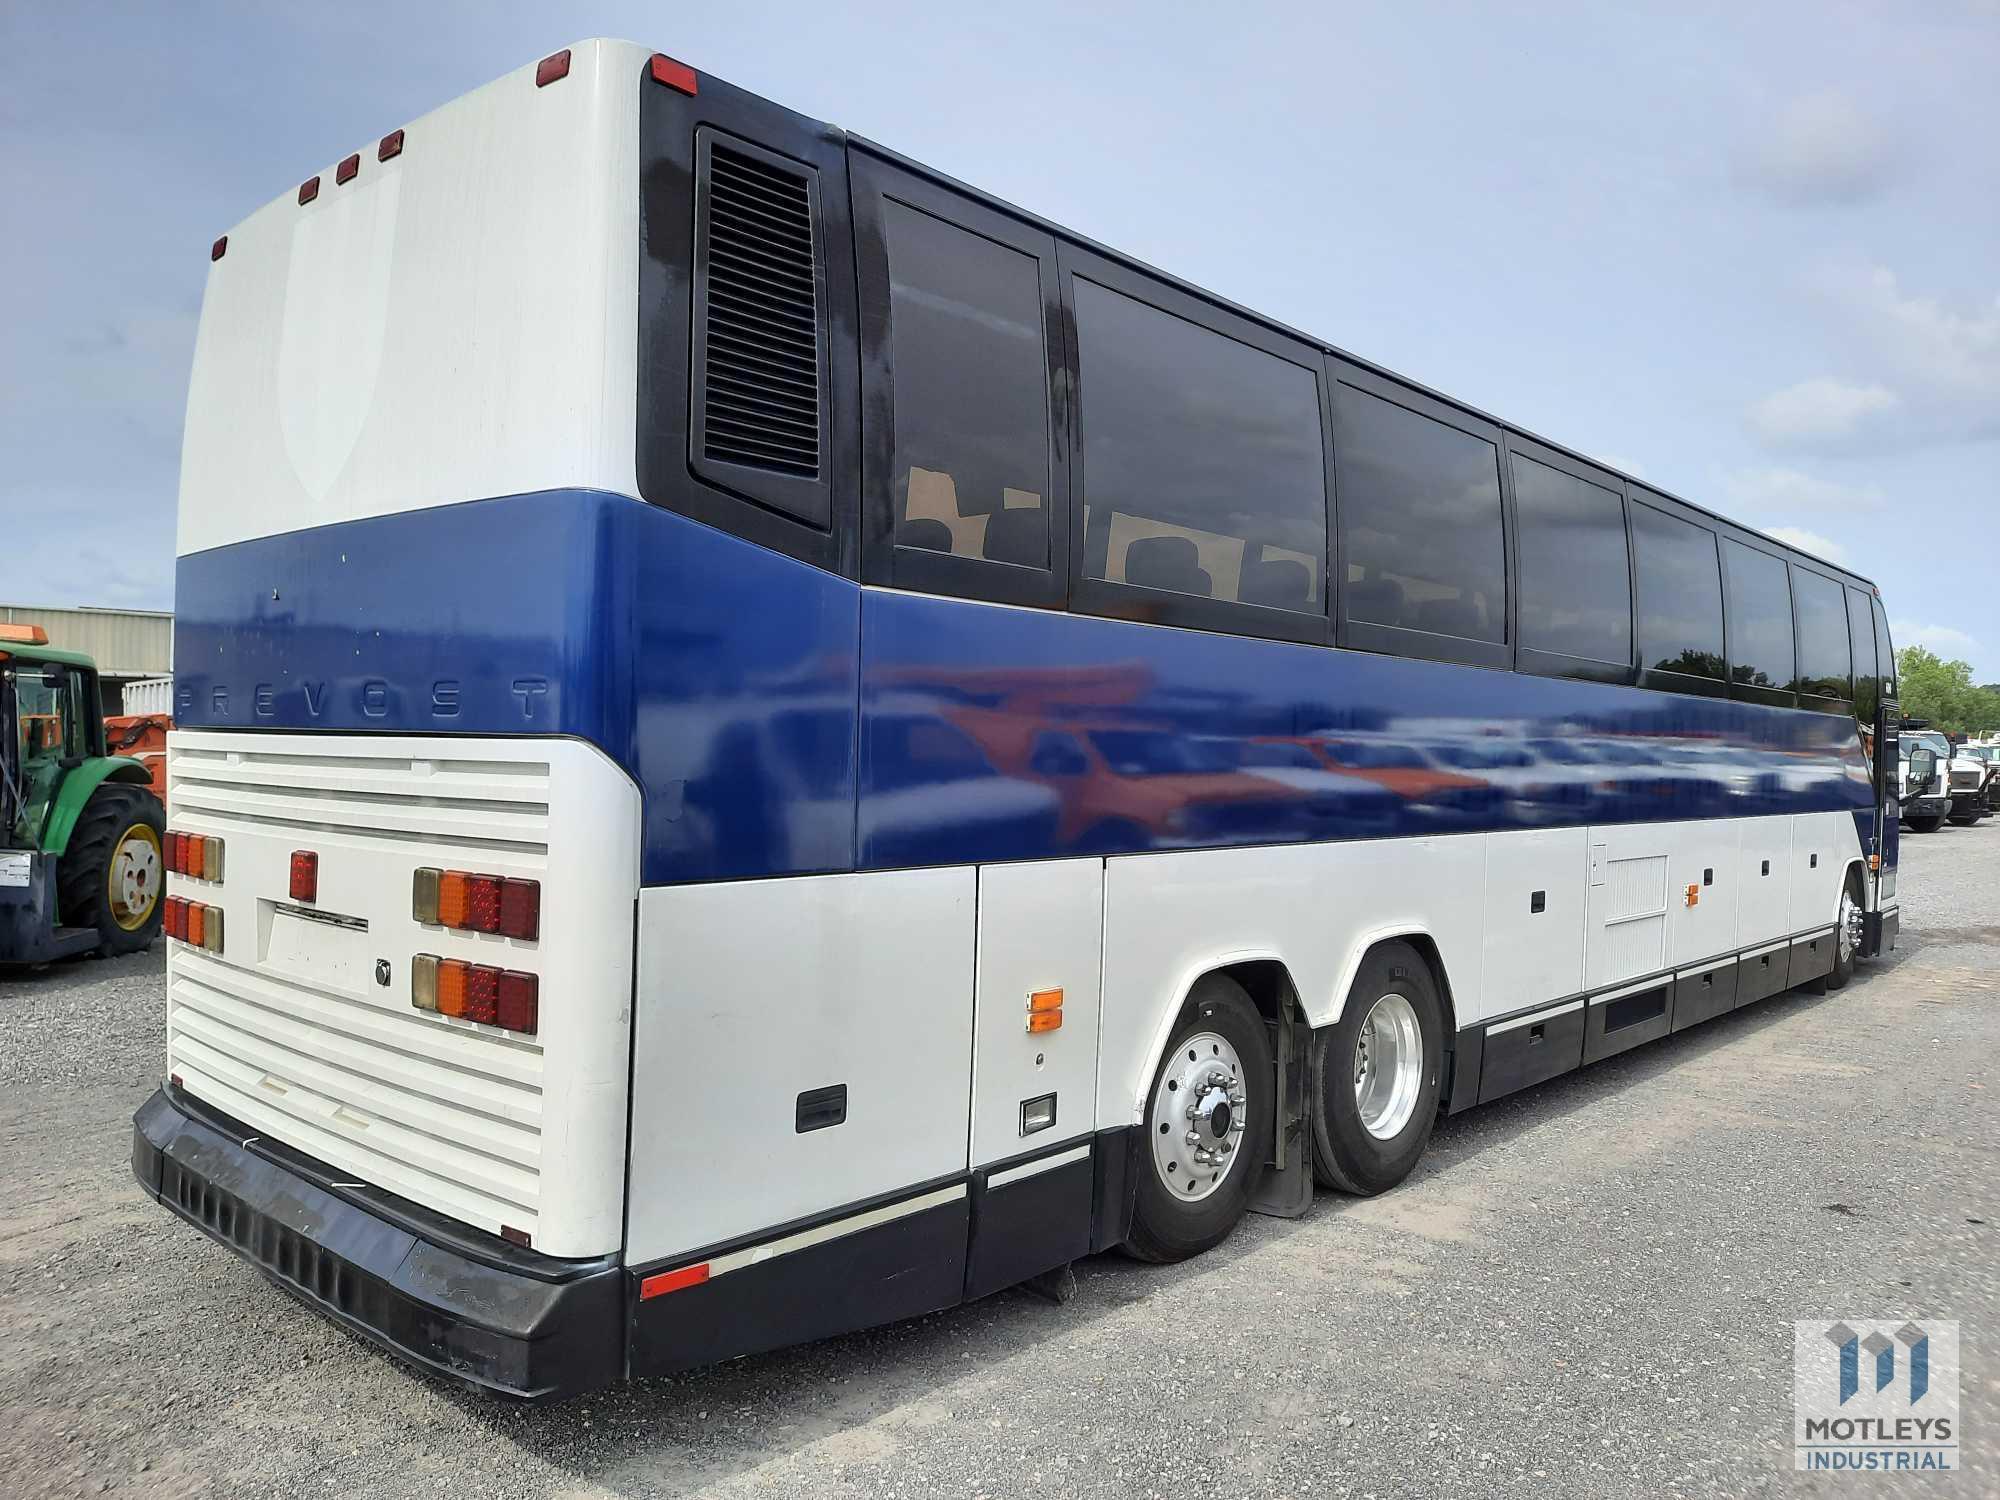 1997 Prevost Bus Bus, VIN #: 2PCH33494v1012068 (TITLE DELAY)